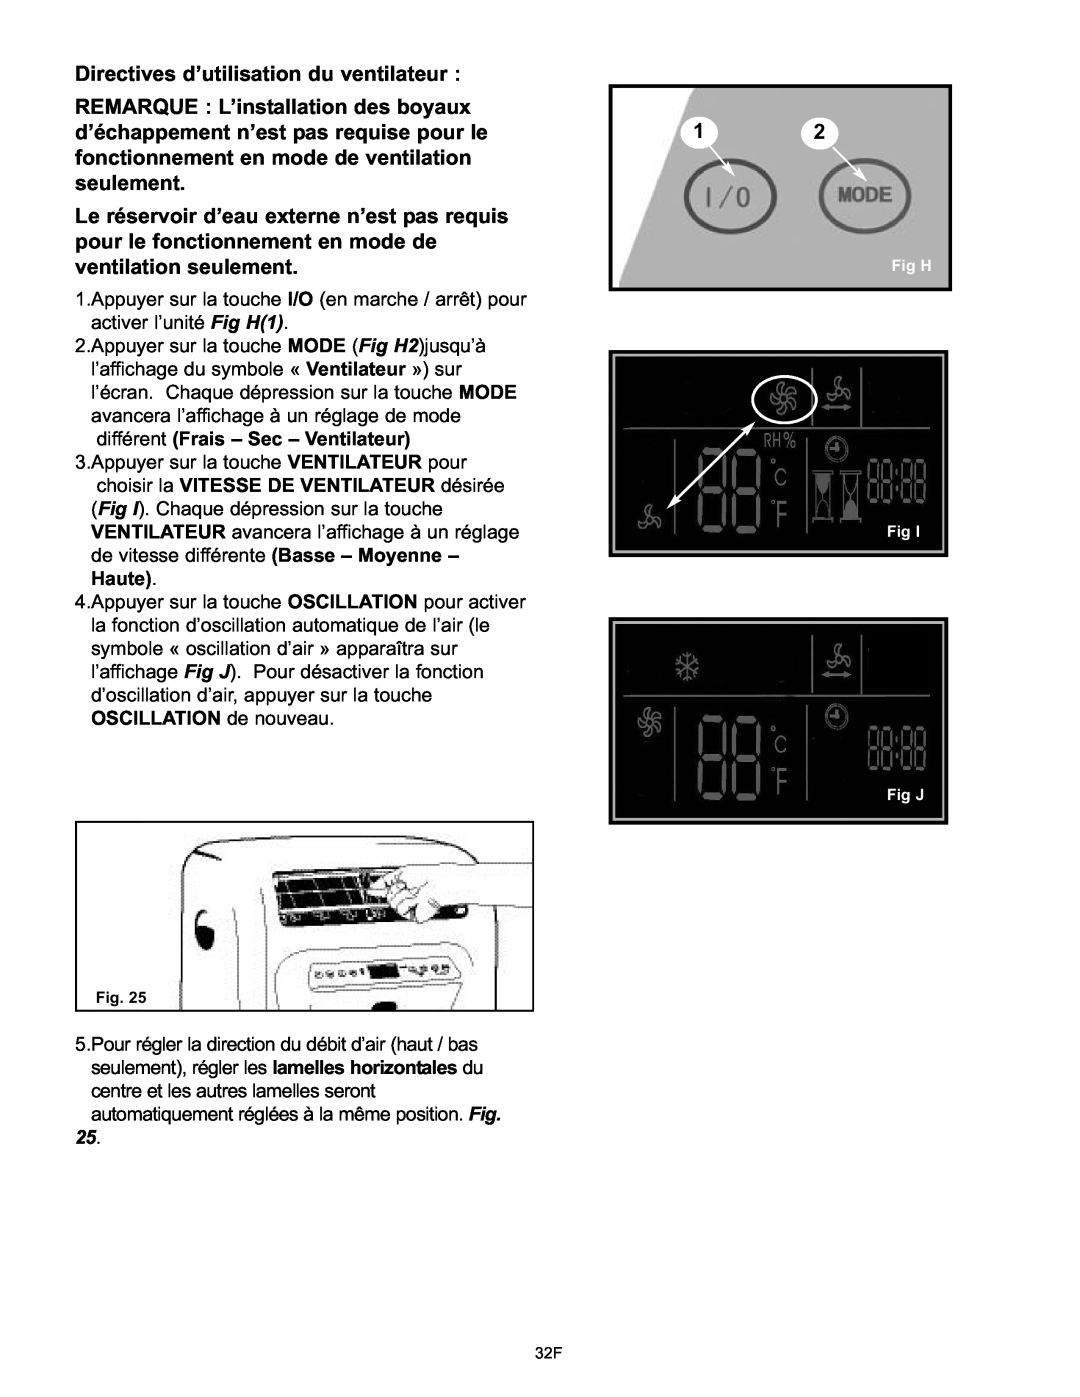 Danby DPAC120061 owner manual Directives d’utilisation du ventilateur 